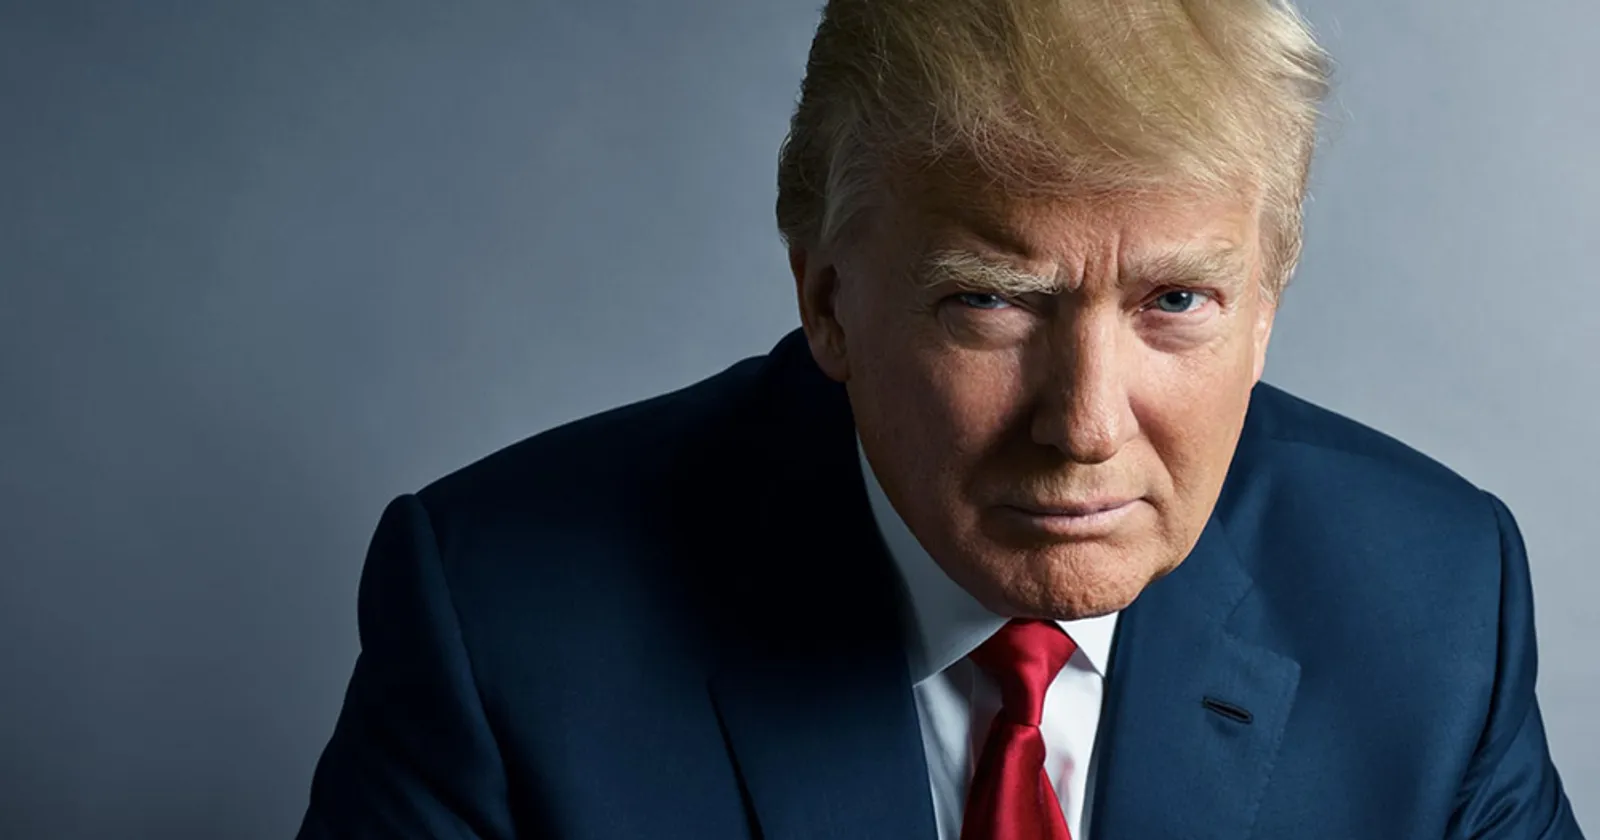 Donald Trump Menang! 8 Janji Inikah yang Menarik Simpati Warga Amerika Terhadap Trump?